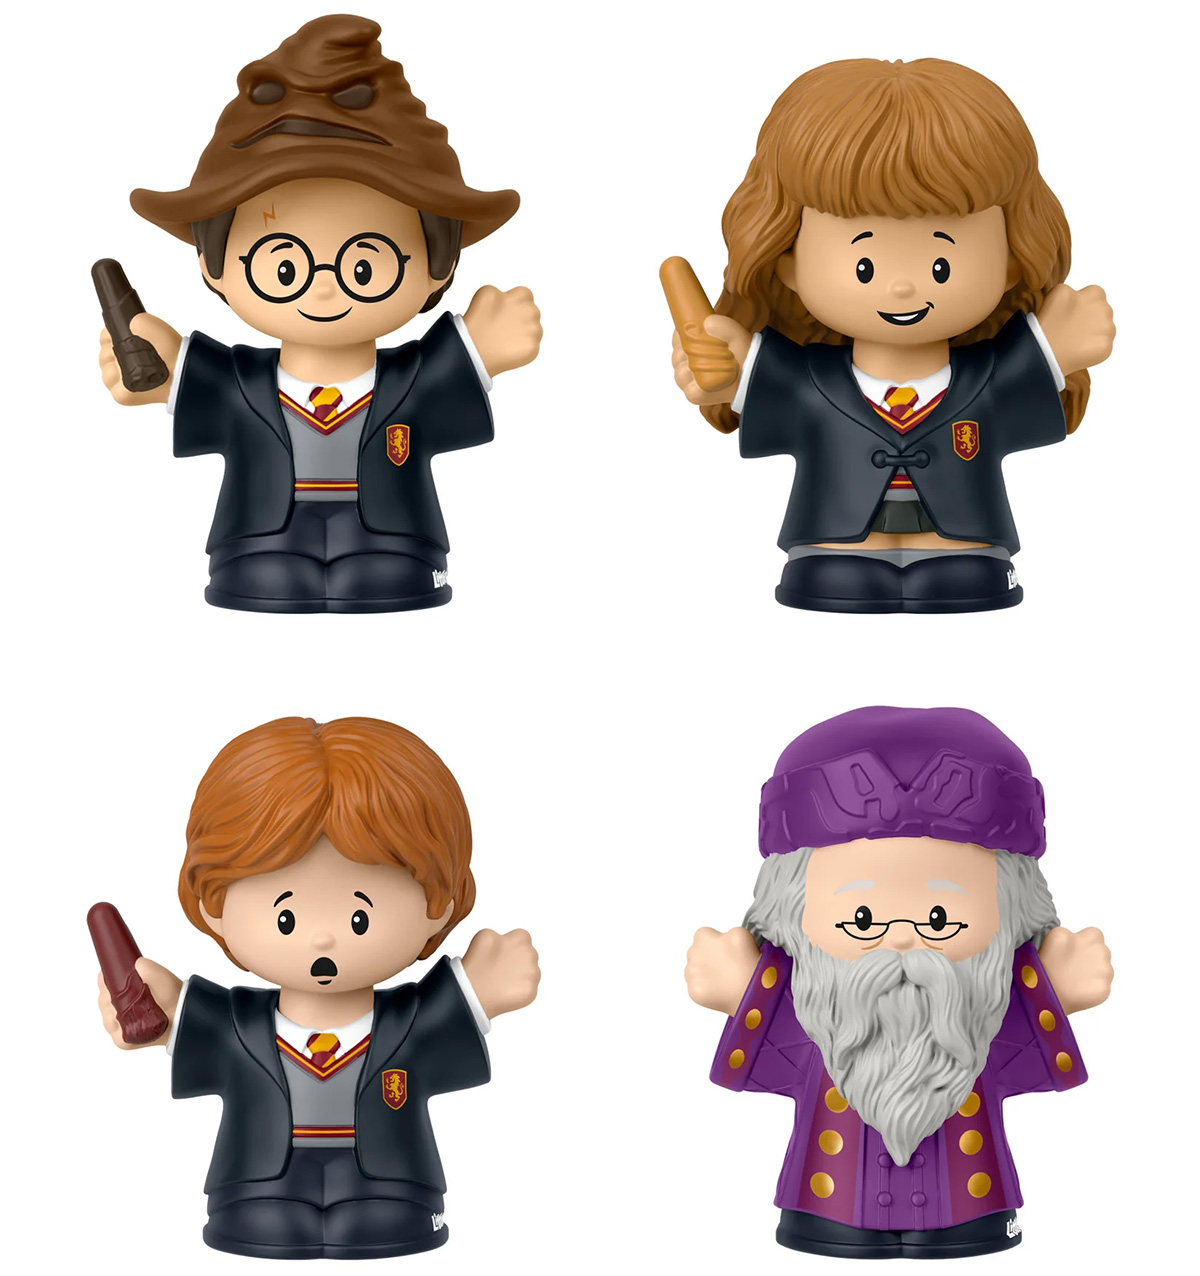 Bonecos Little People Collector Harry Potter: Pedra Filosofal e a Câmera Secreta